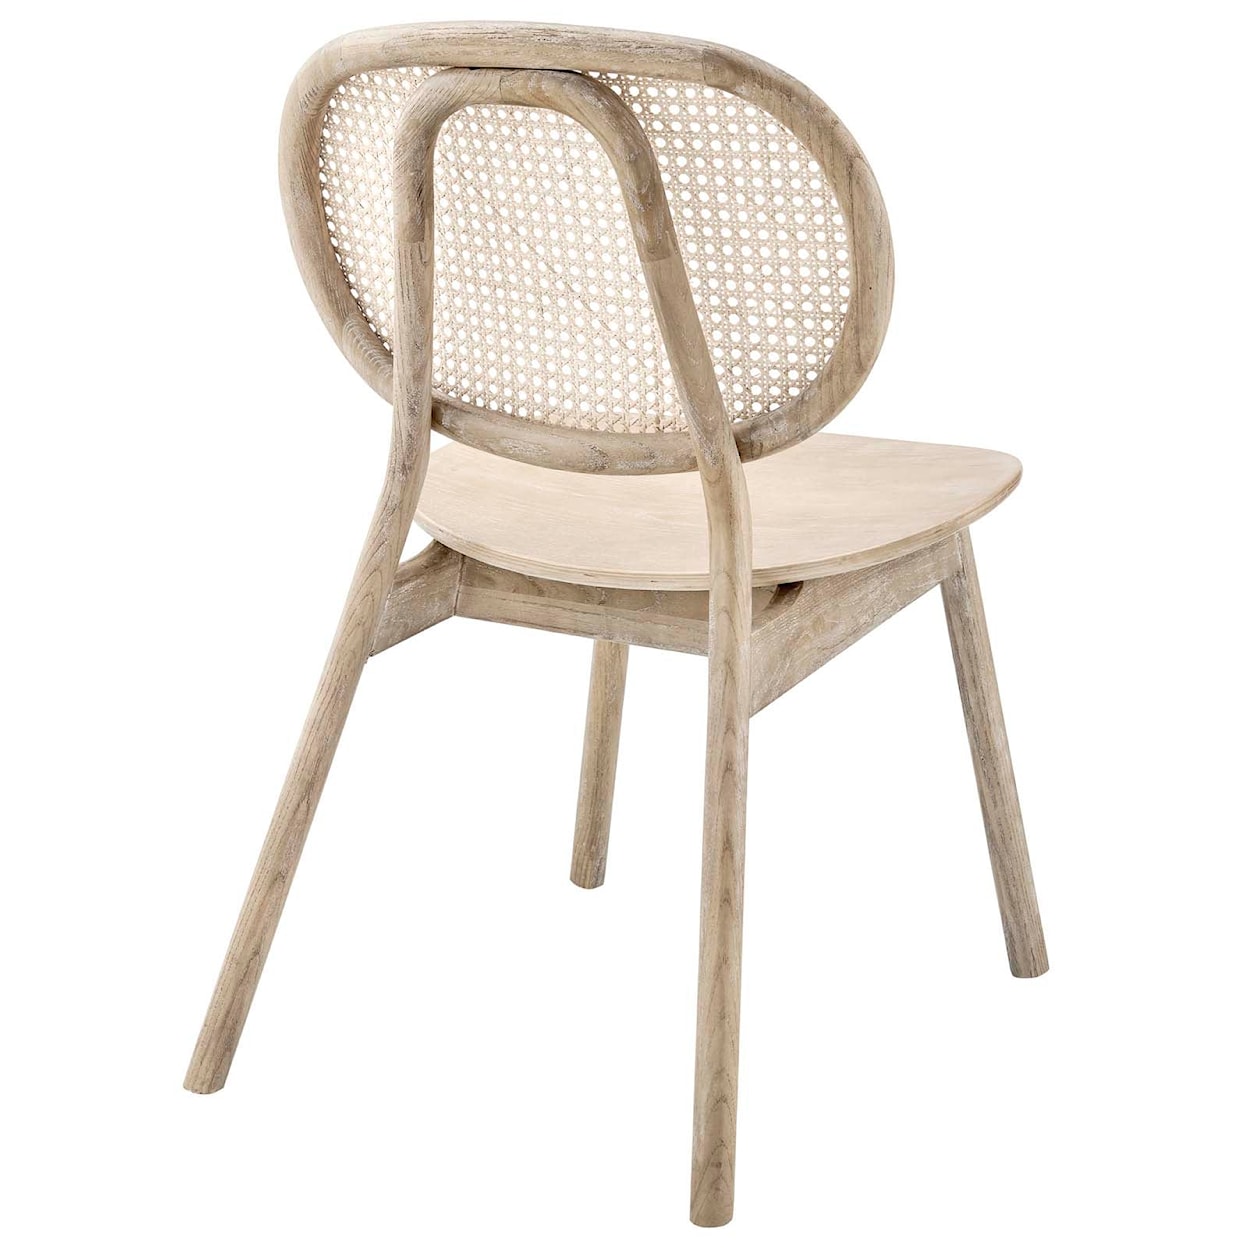 Modway Malina Malina Wood Dining Side Chair